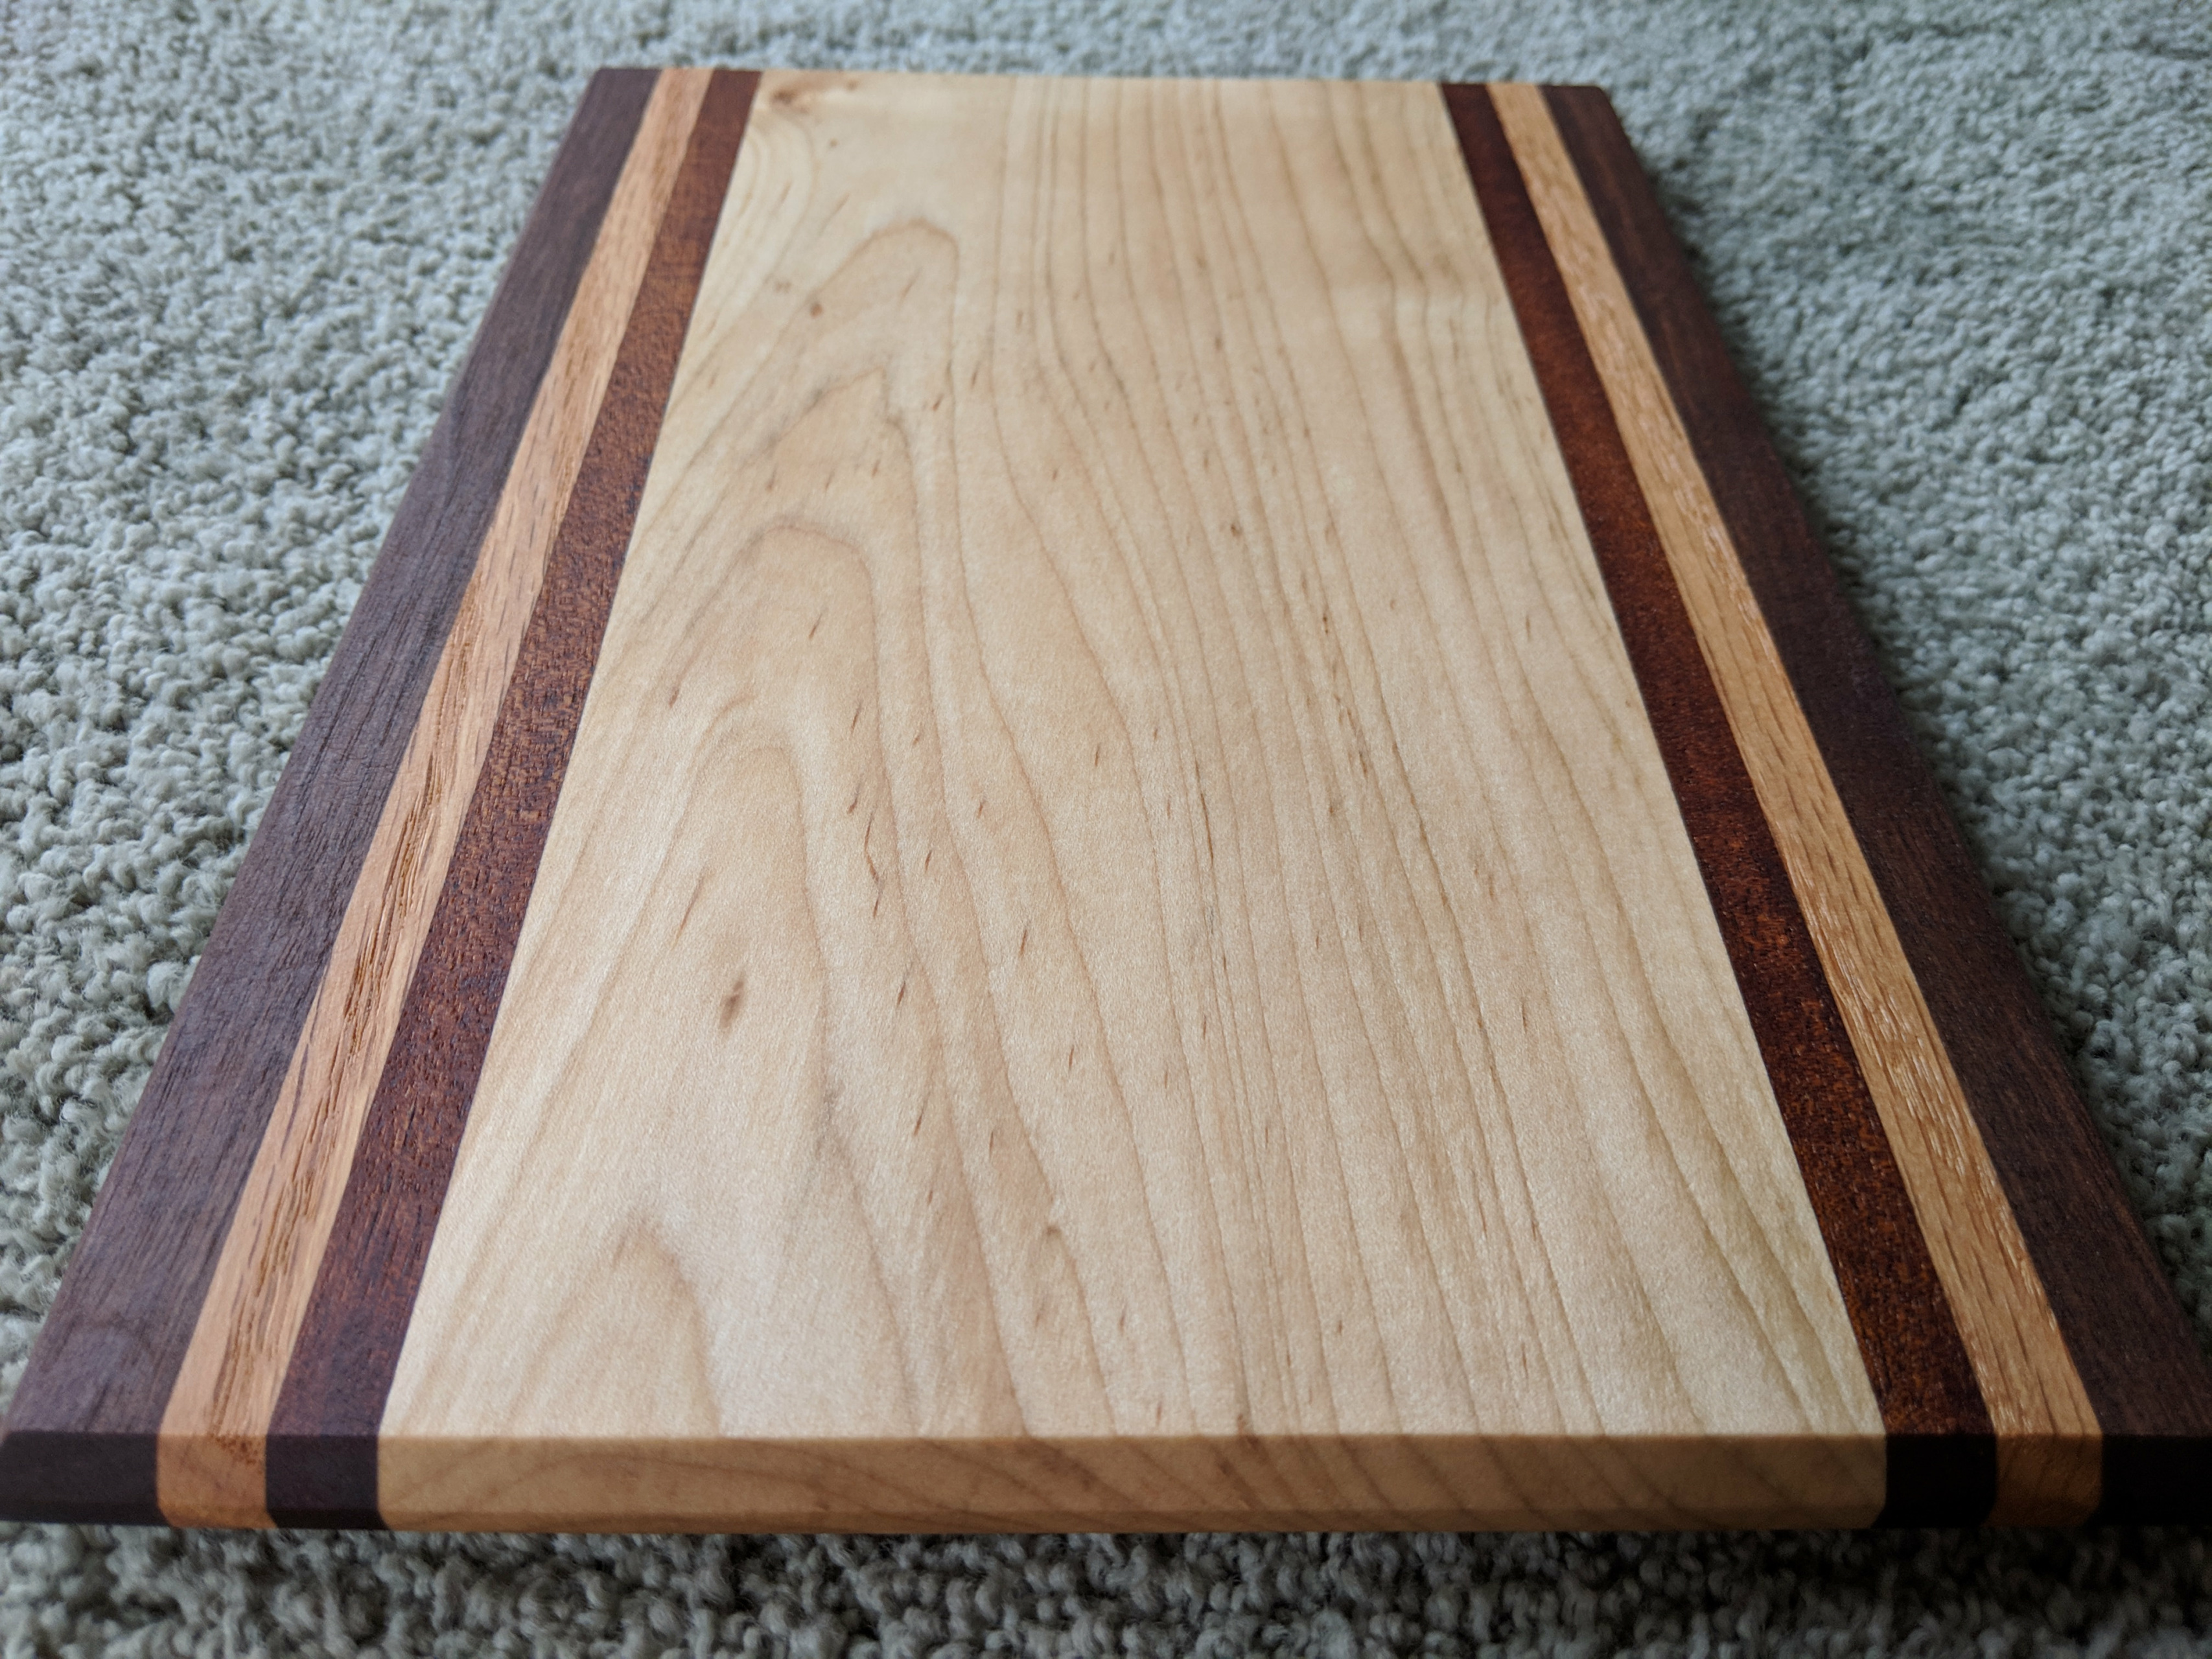 Small white oak board